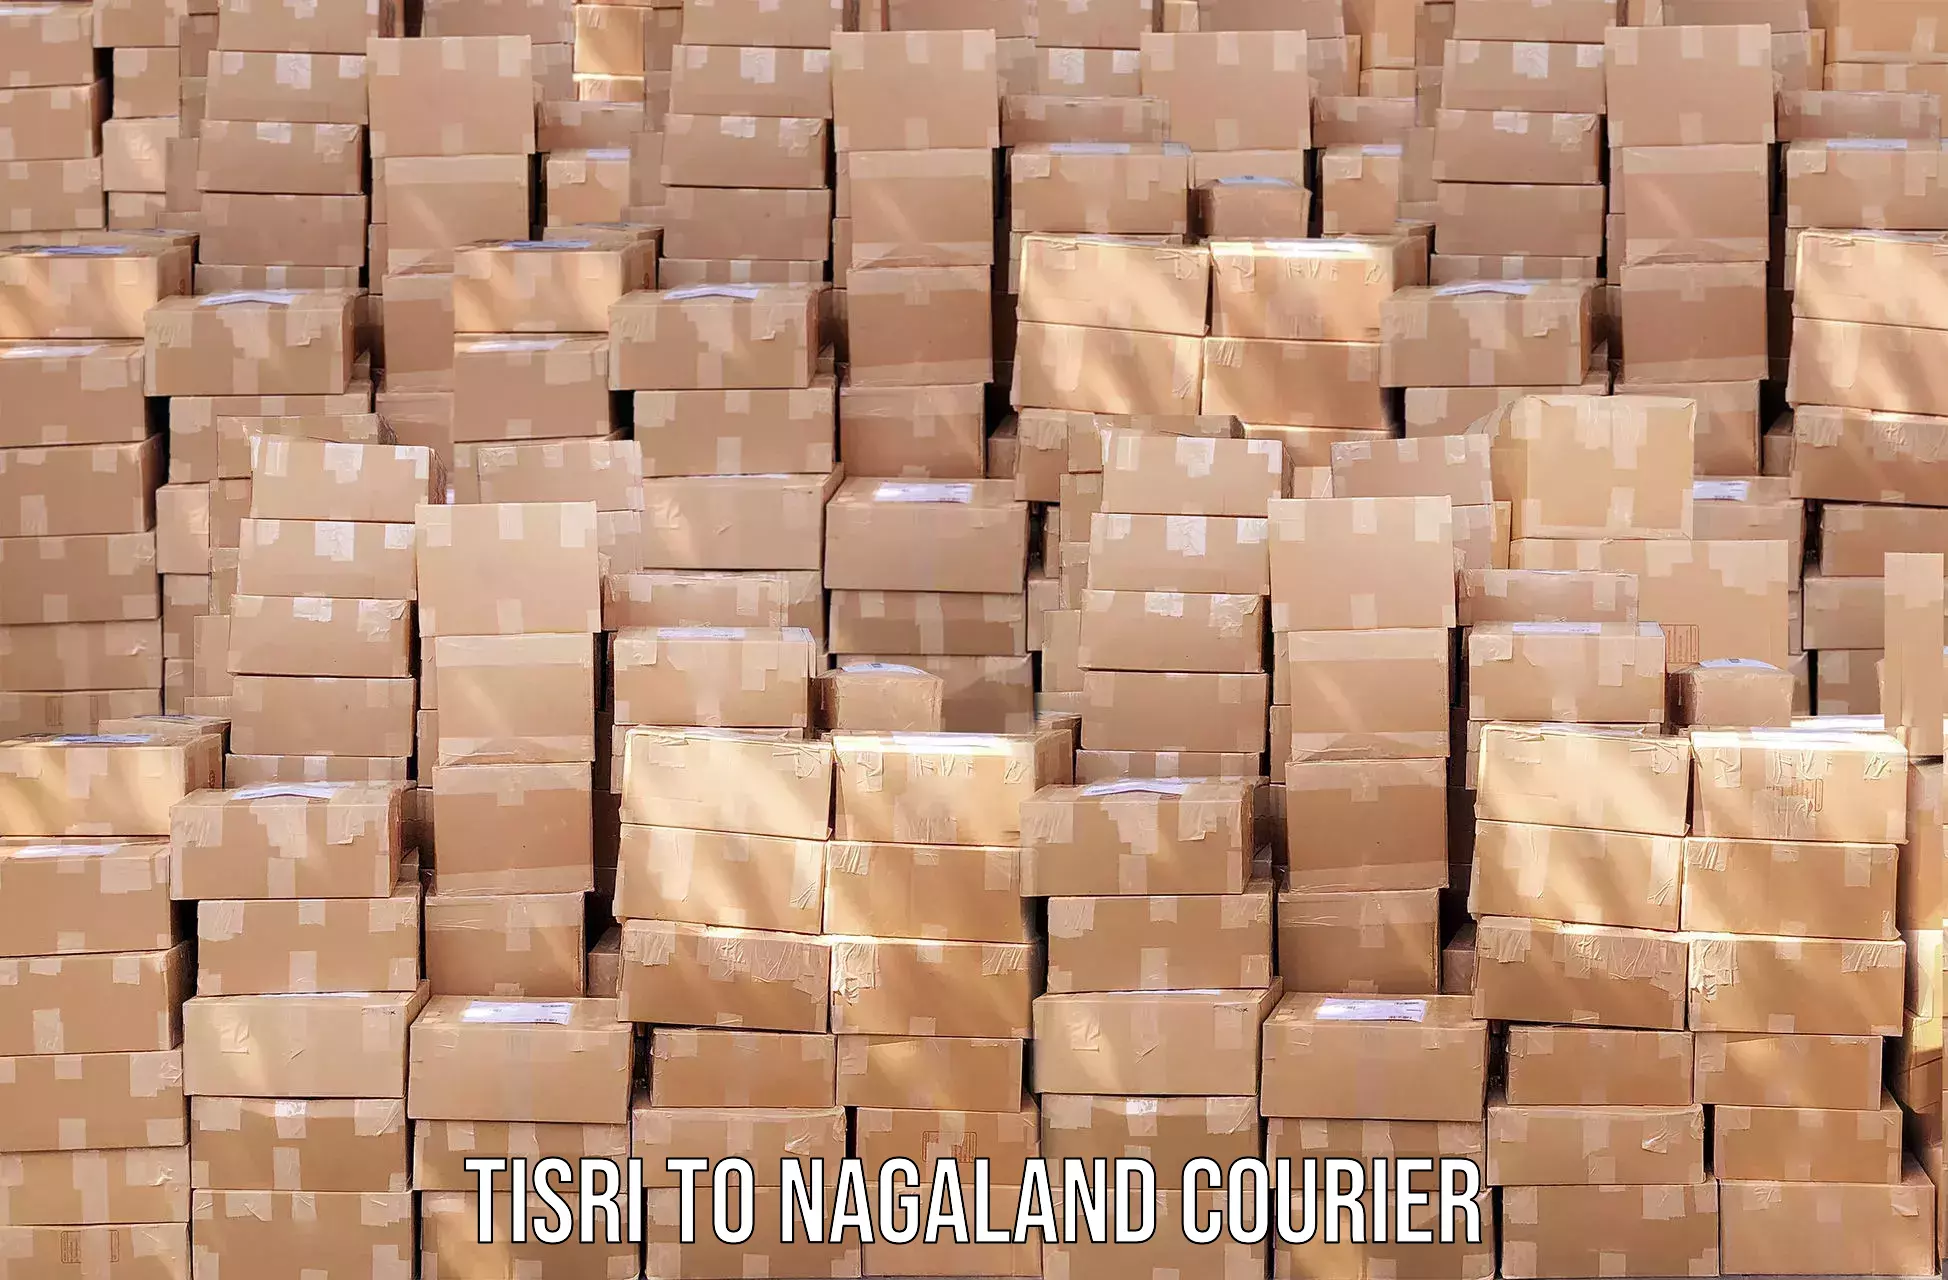 Local delivery service Tisri to Mon